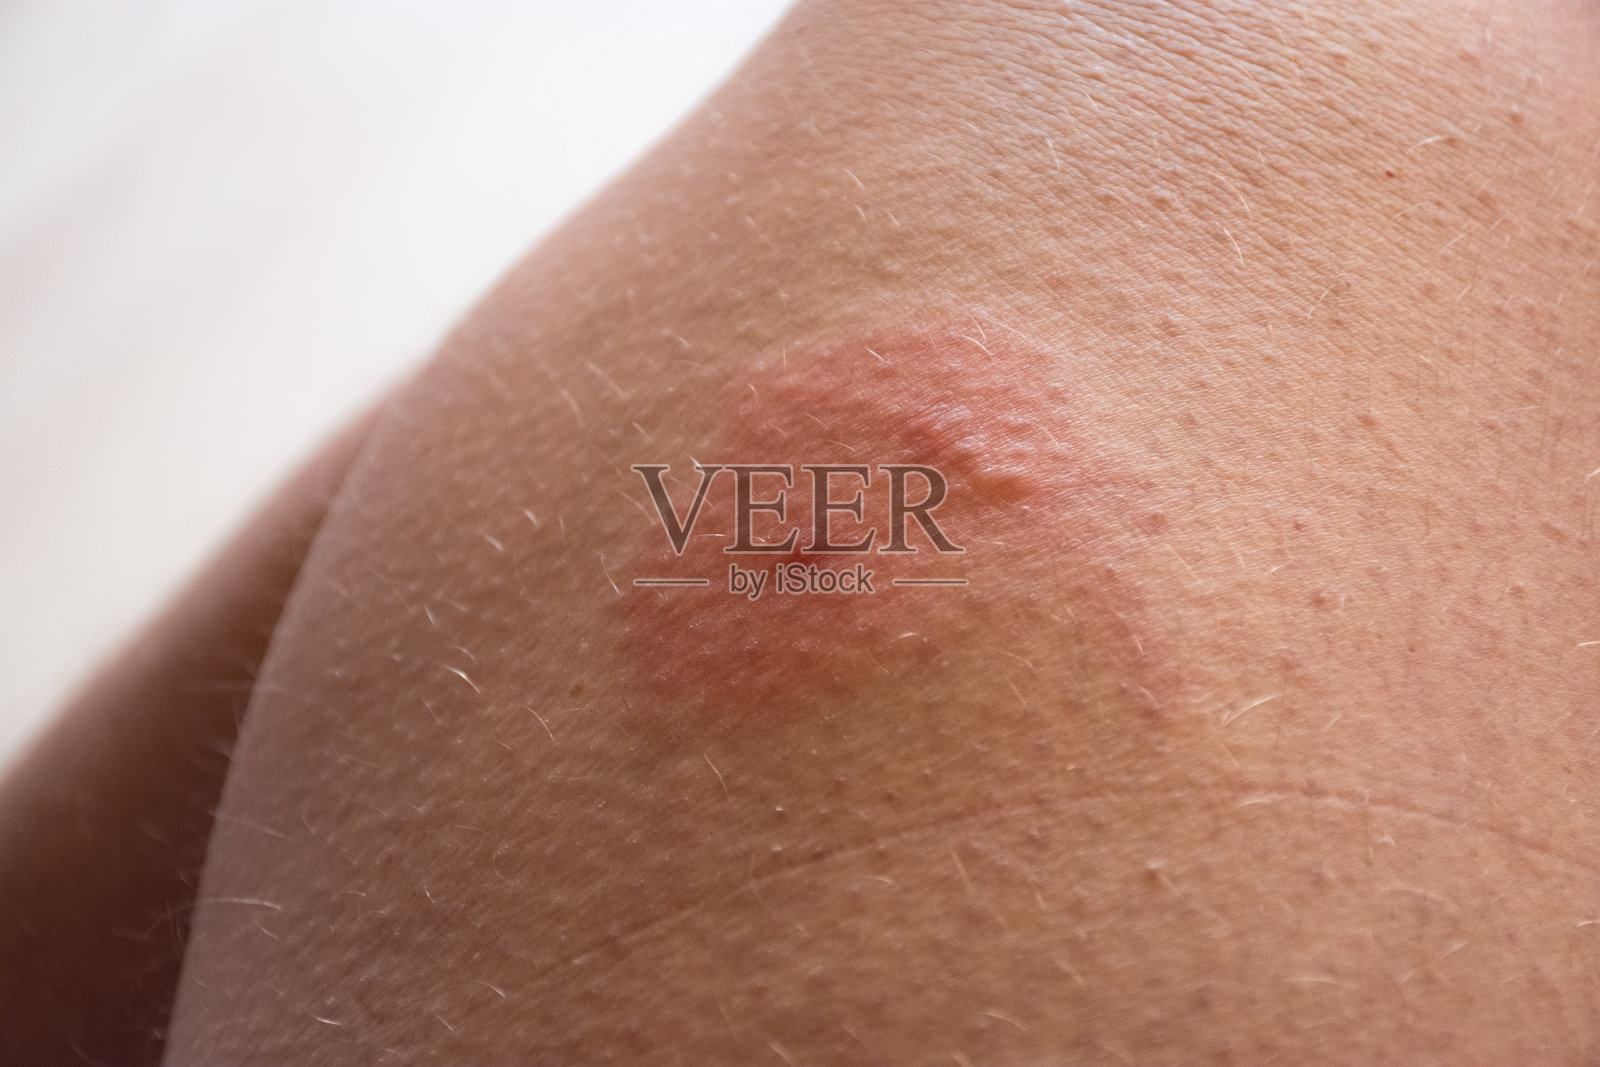 皮肤被昆虫咬伤的照片。双虫叮咬(蜜蜂、黄蜂、马蝇)，皮肤发红、发炎、过敏性肿胀或水肿。虫刺皮肤损伤的迹象和症状照片摄影图片